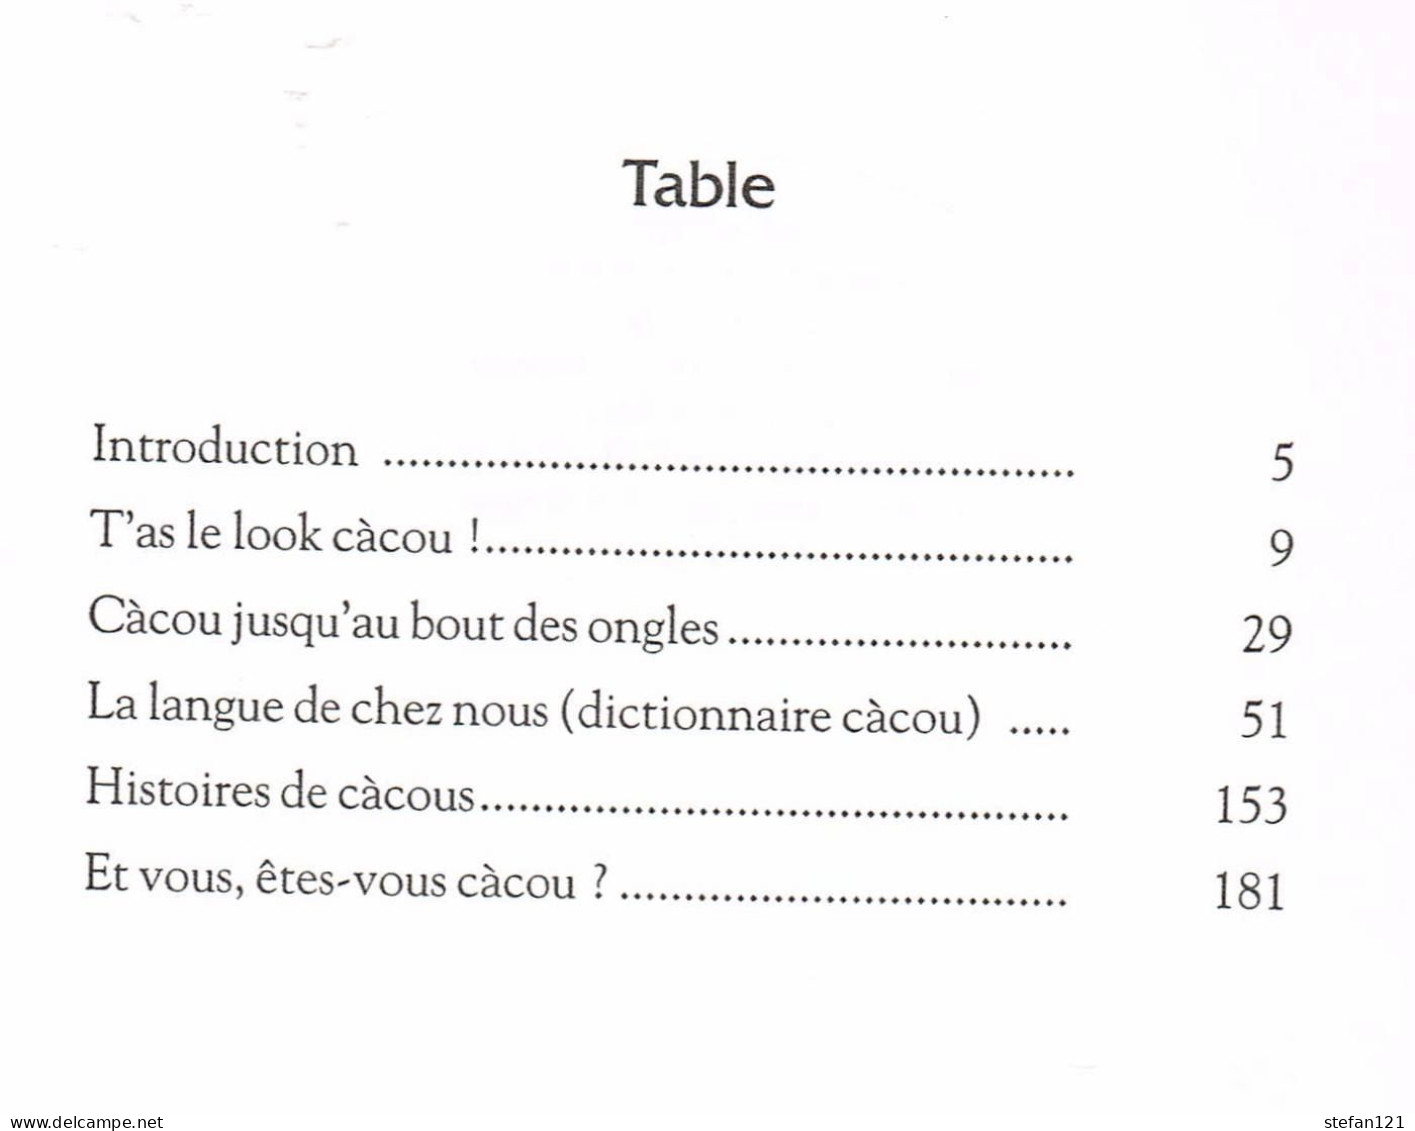 Les Cacous - Le Parler De Marseille - Jean Jaque - 2007 - 192 Pages 20,5 X 14 Cm - Rhône-Alpes